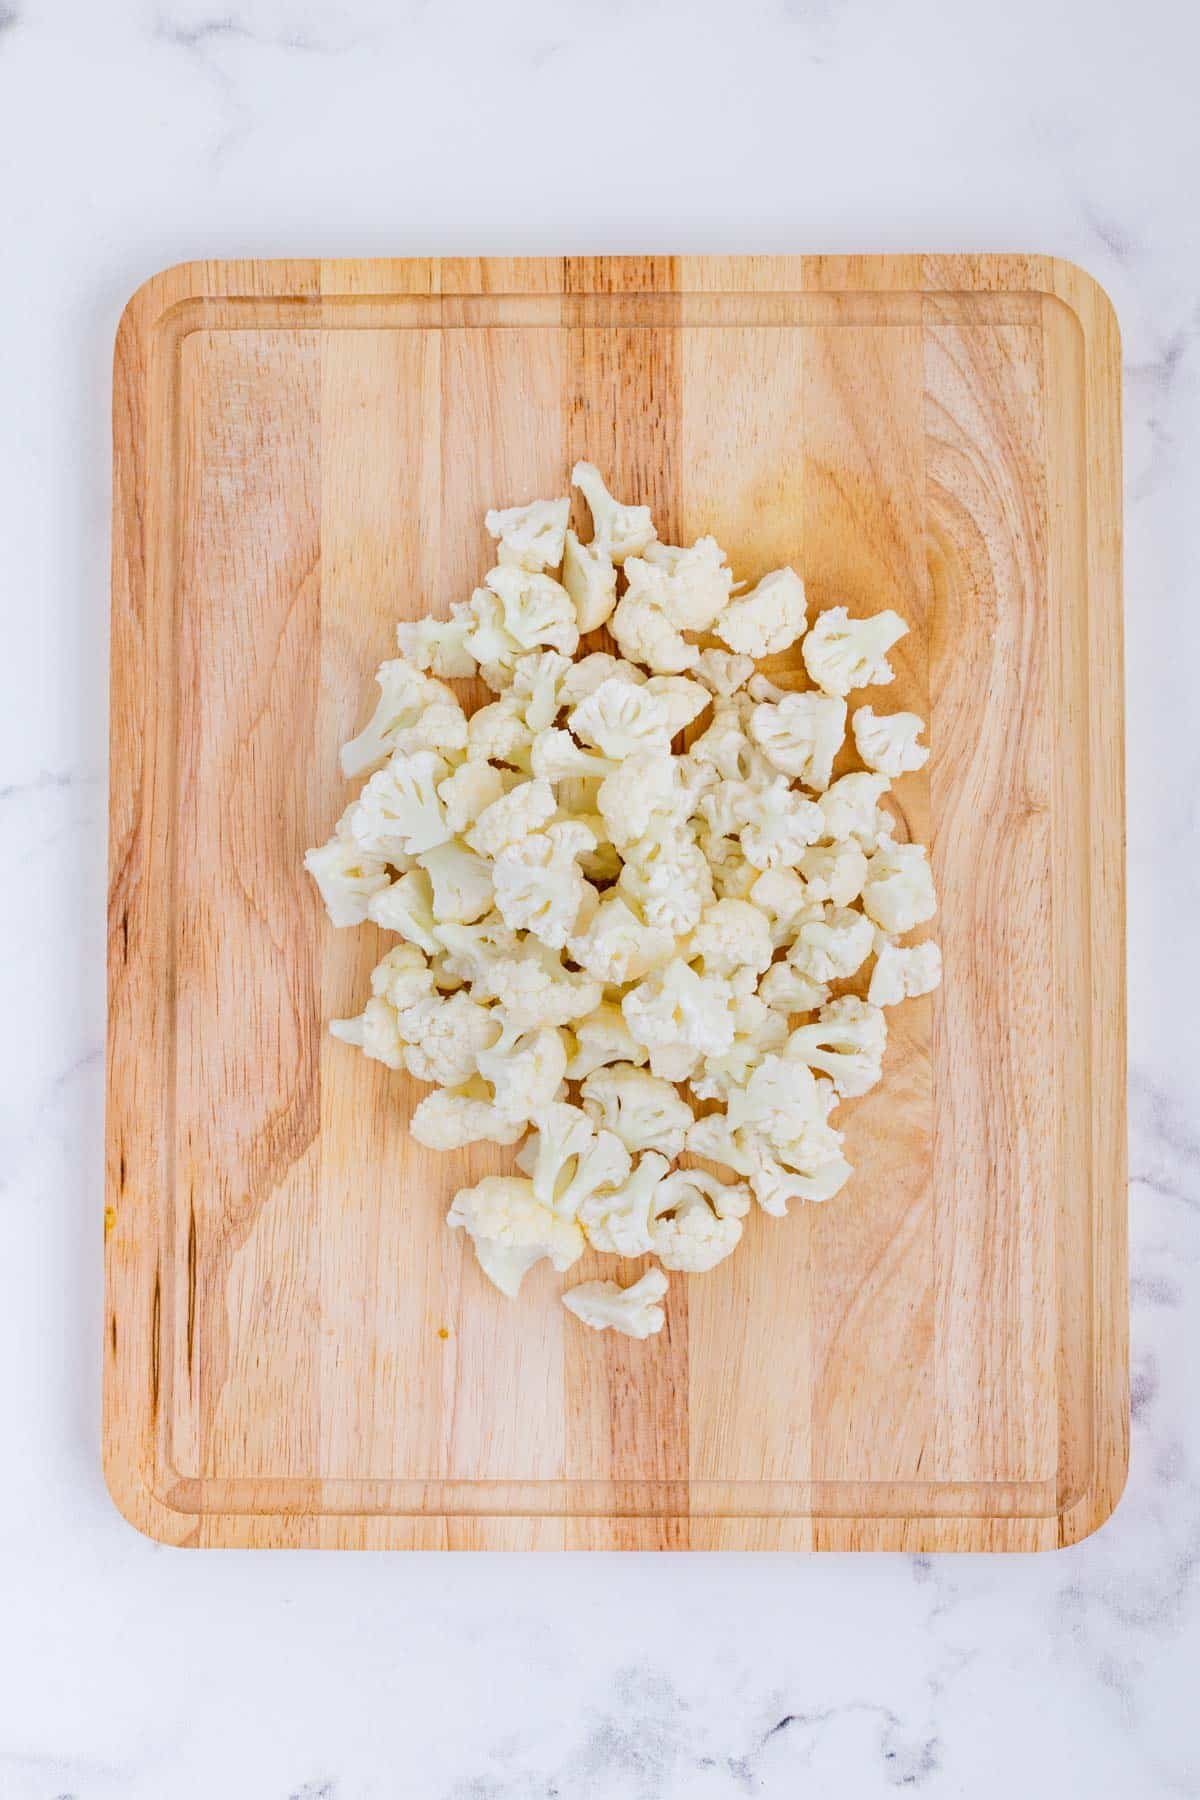 Chopped cauliflower is on a cutting board.